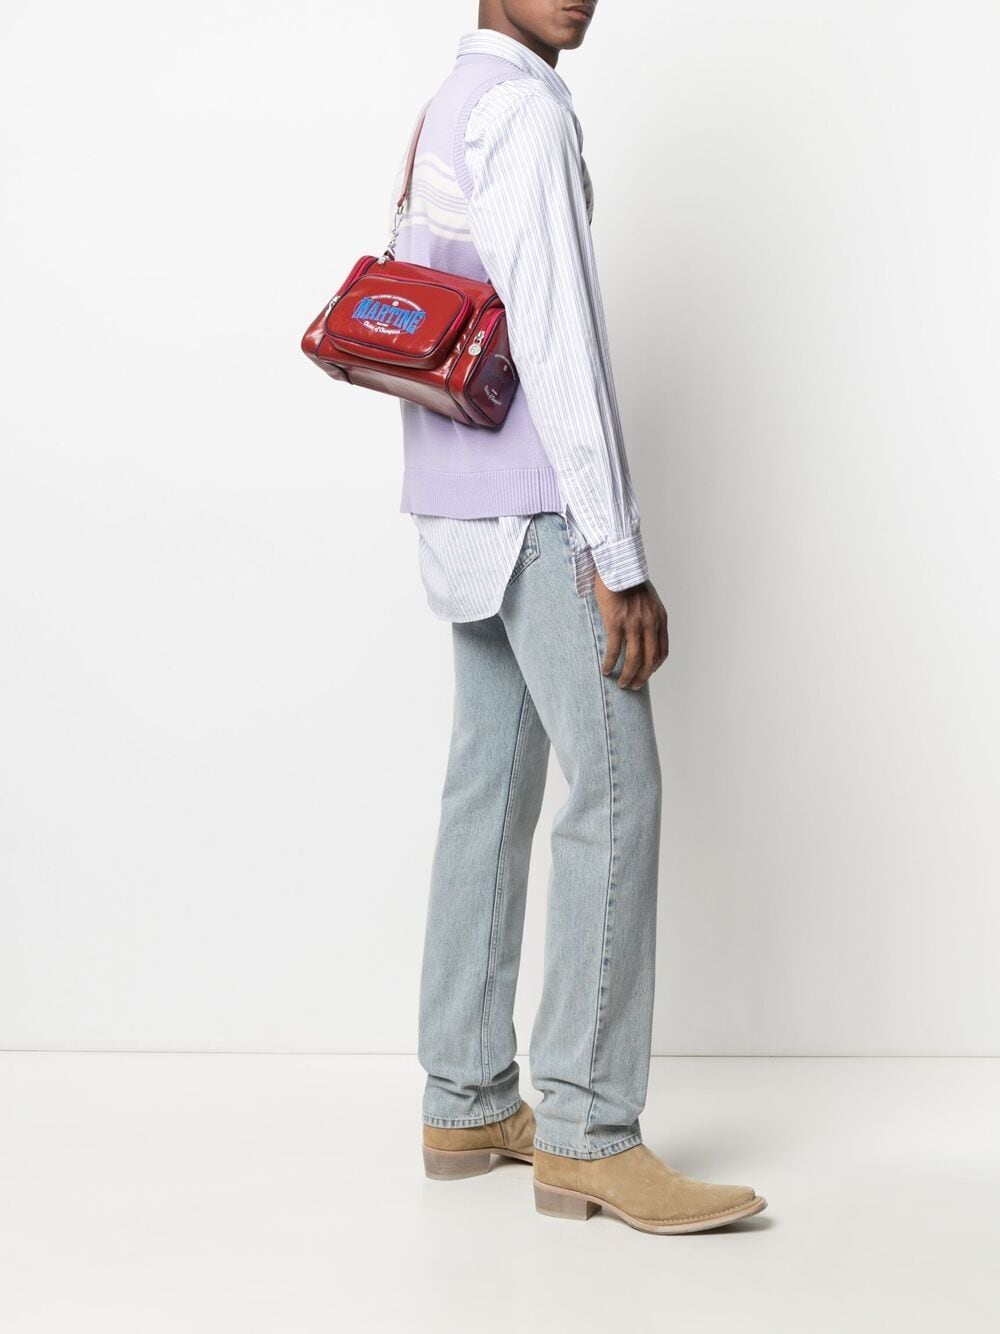 фото Martine rose сумка на плечо с логотипом